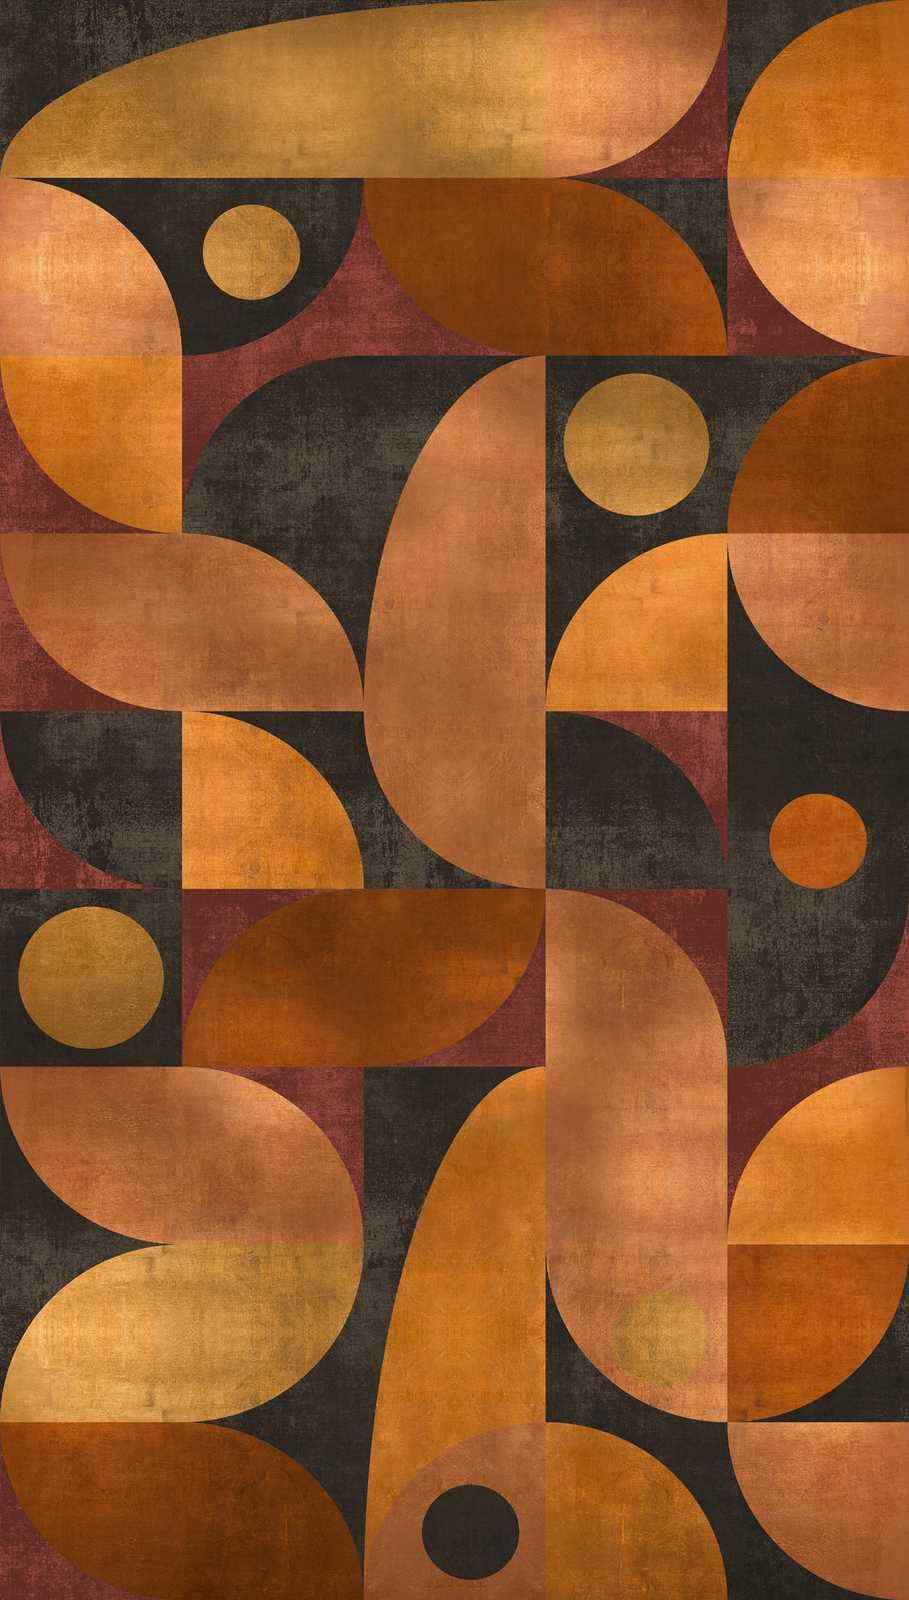             Papier peint intissé dans des tons chauds avec des motifs graphiques ronds - orange, marron, rouge
        